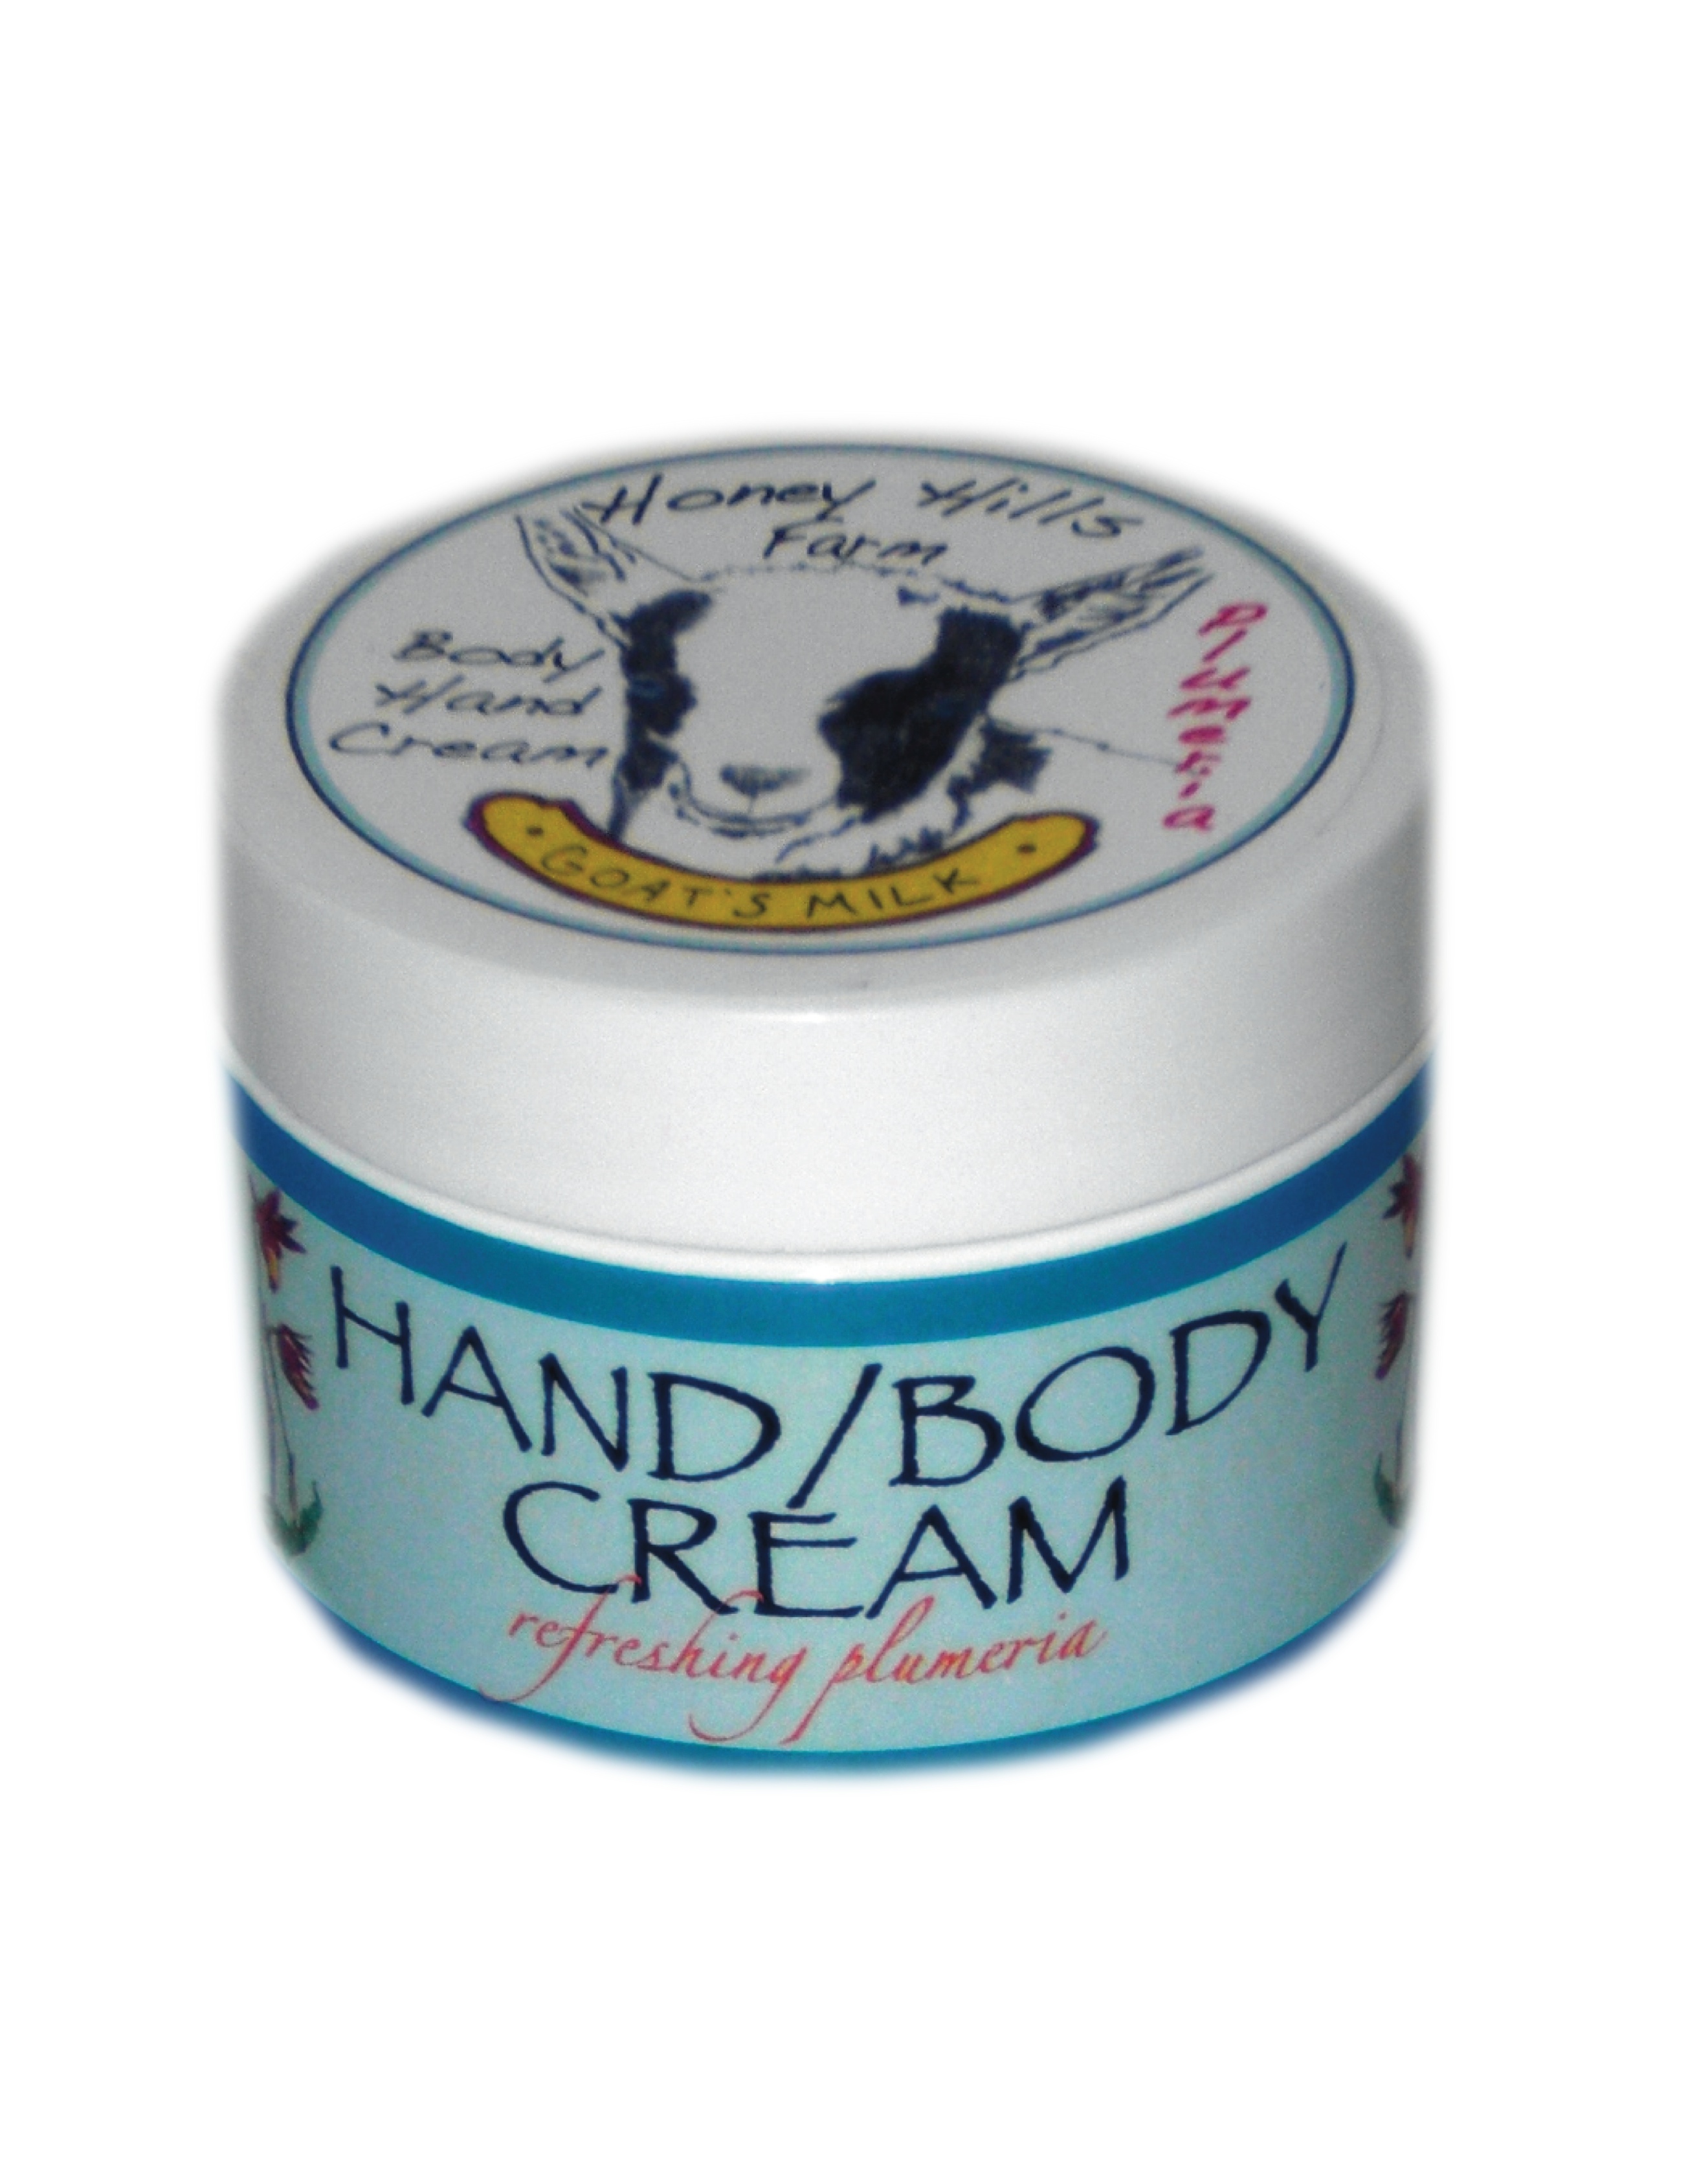 Hand/Body Cream